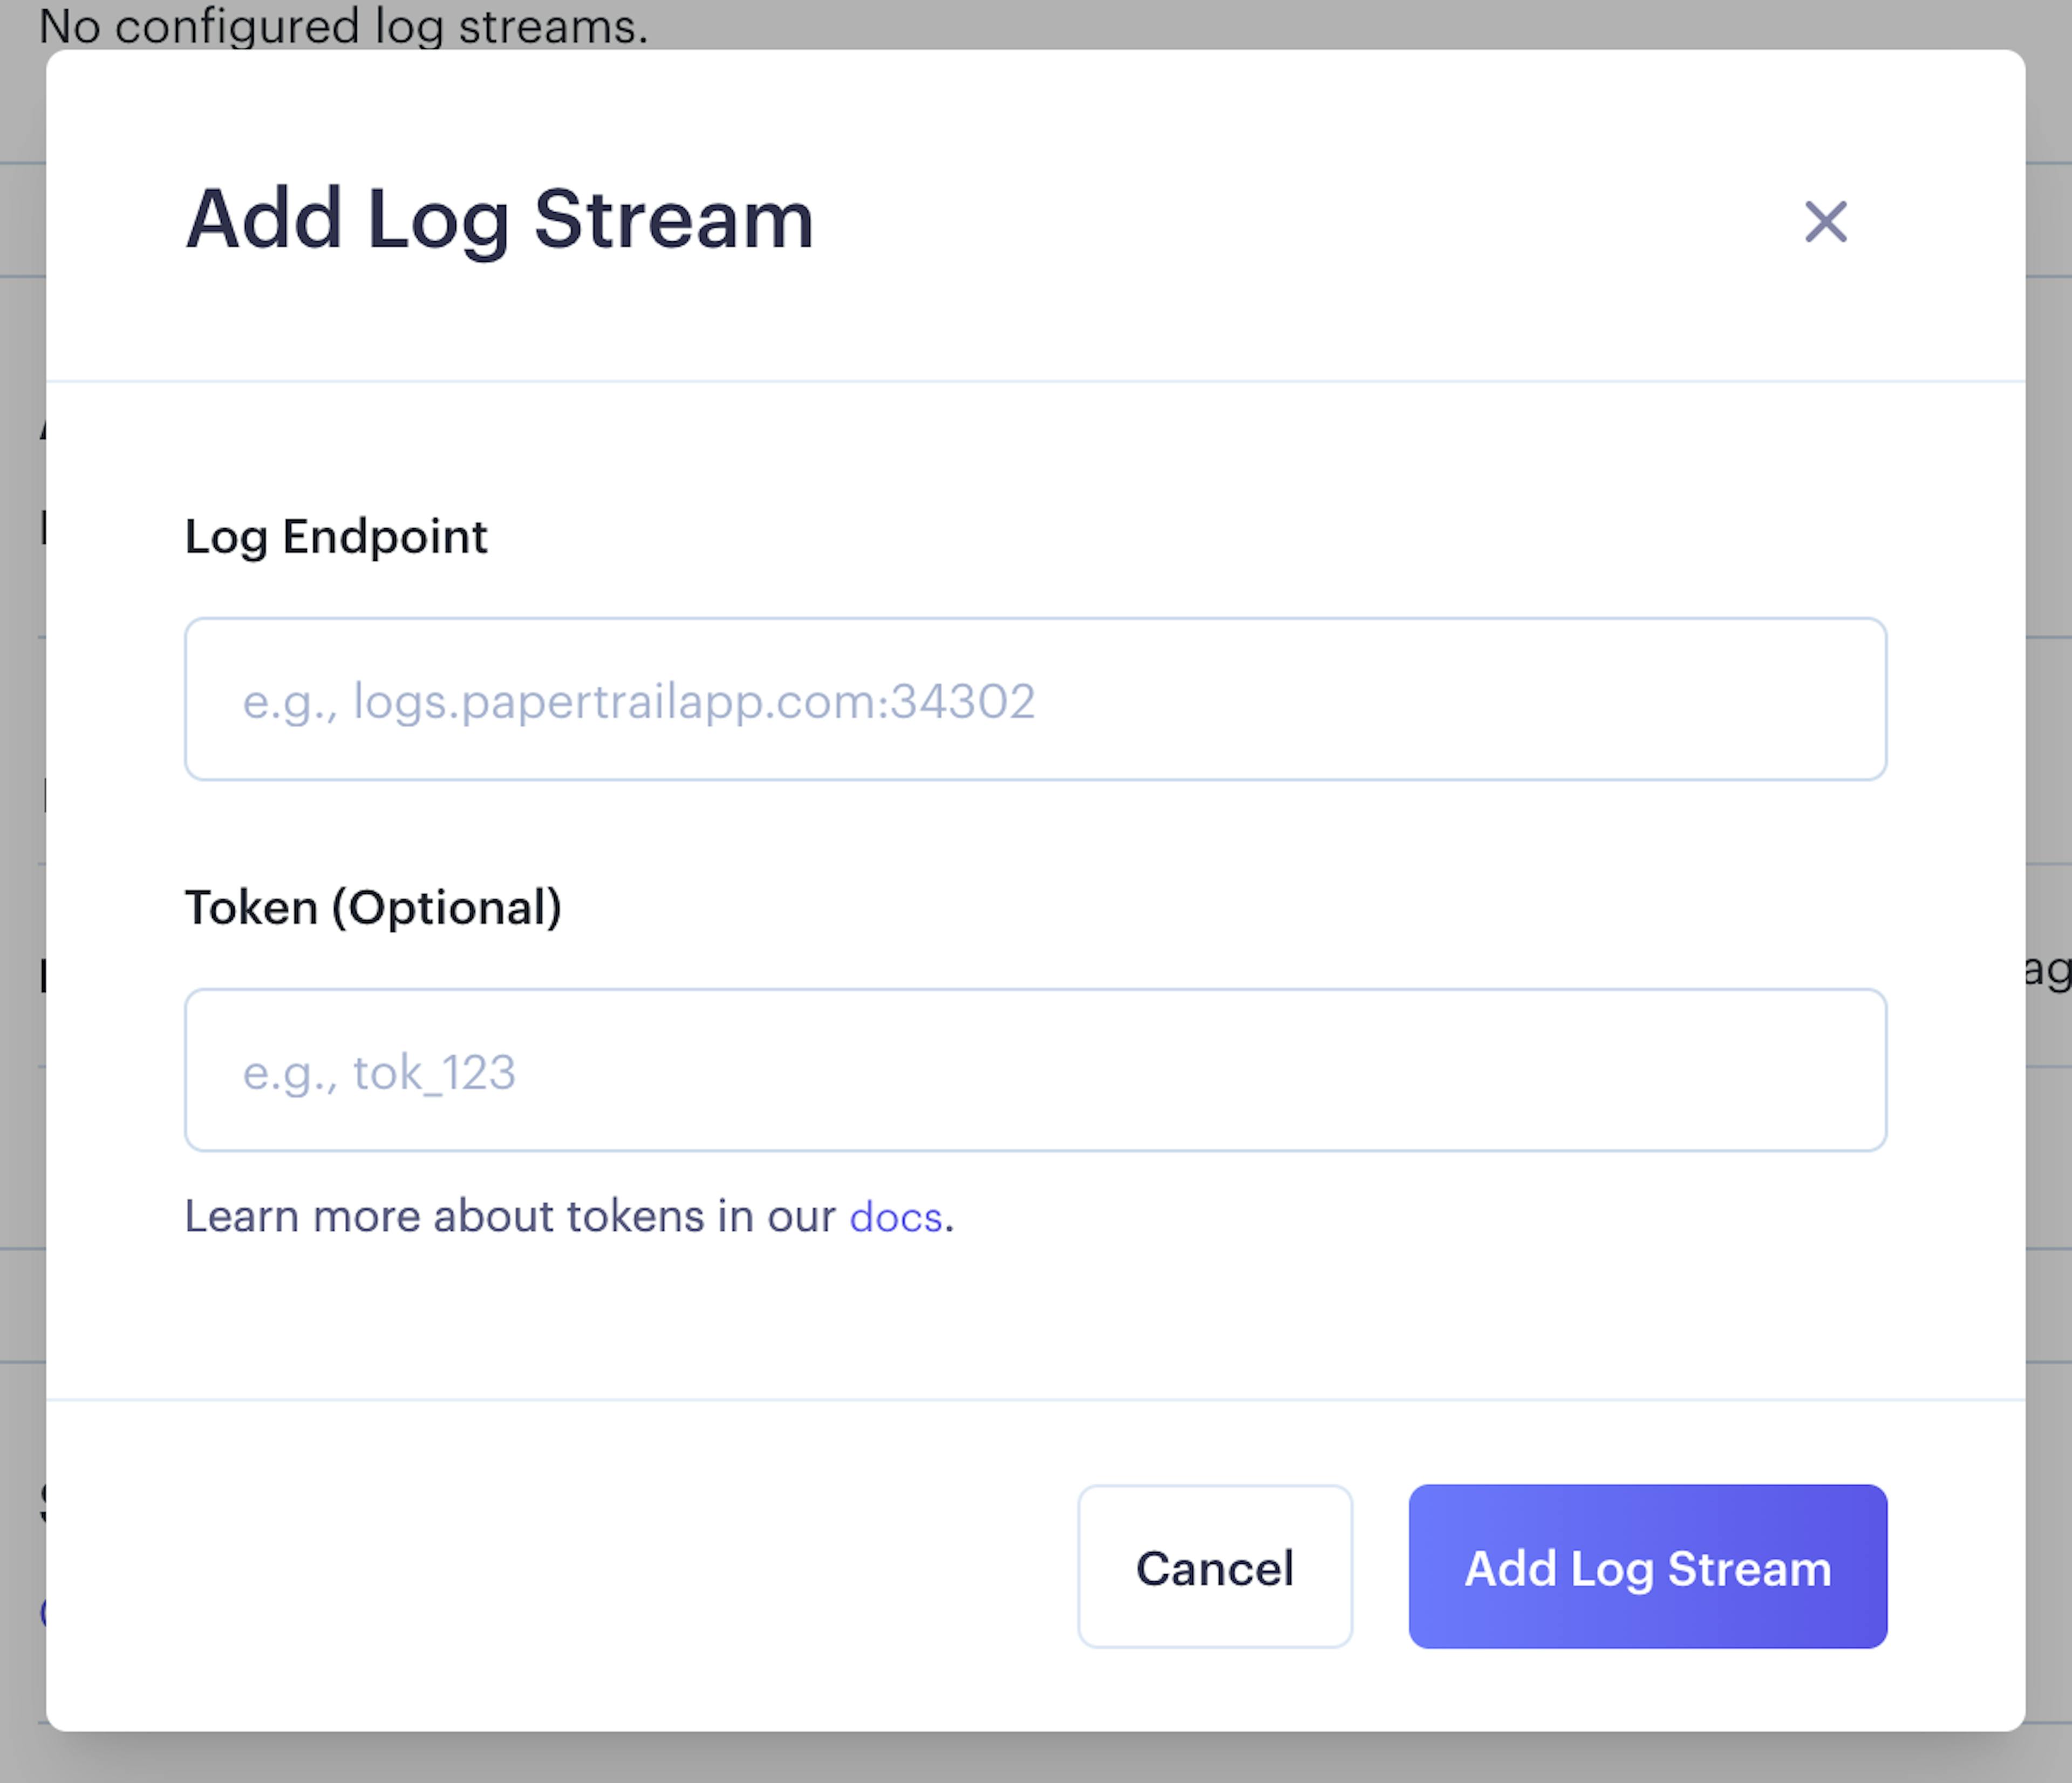 Adding your log stream